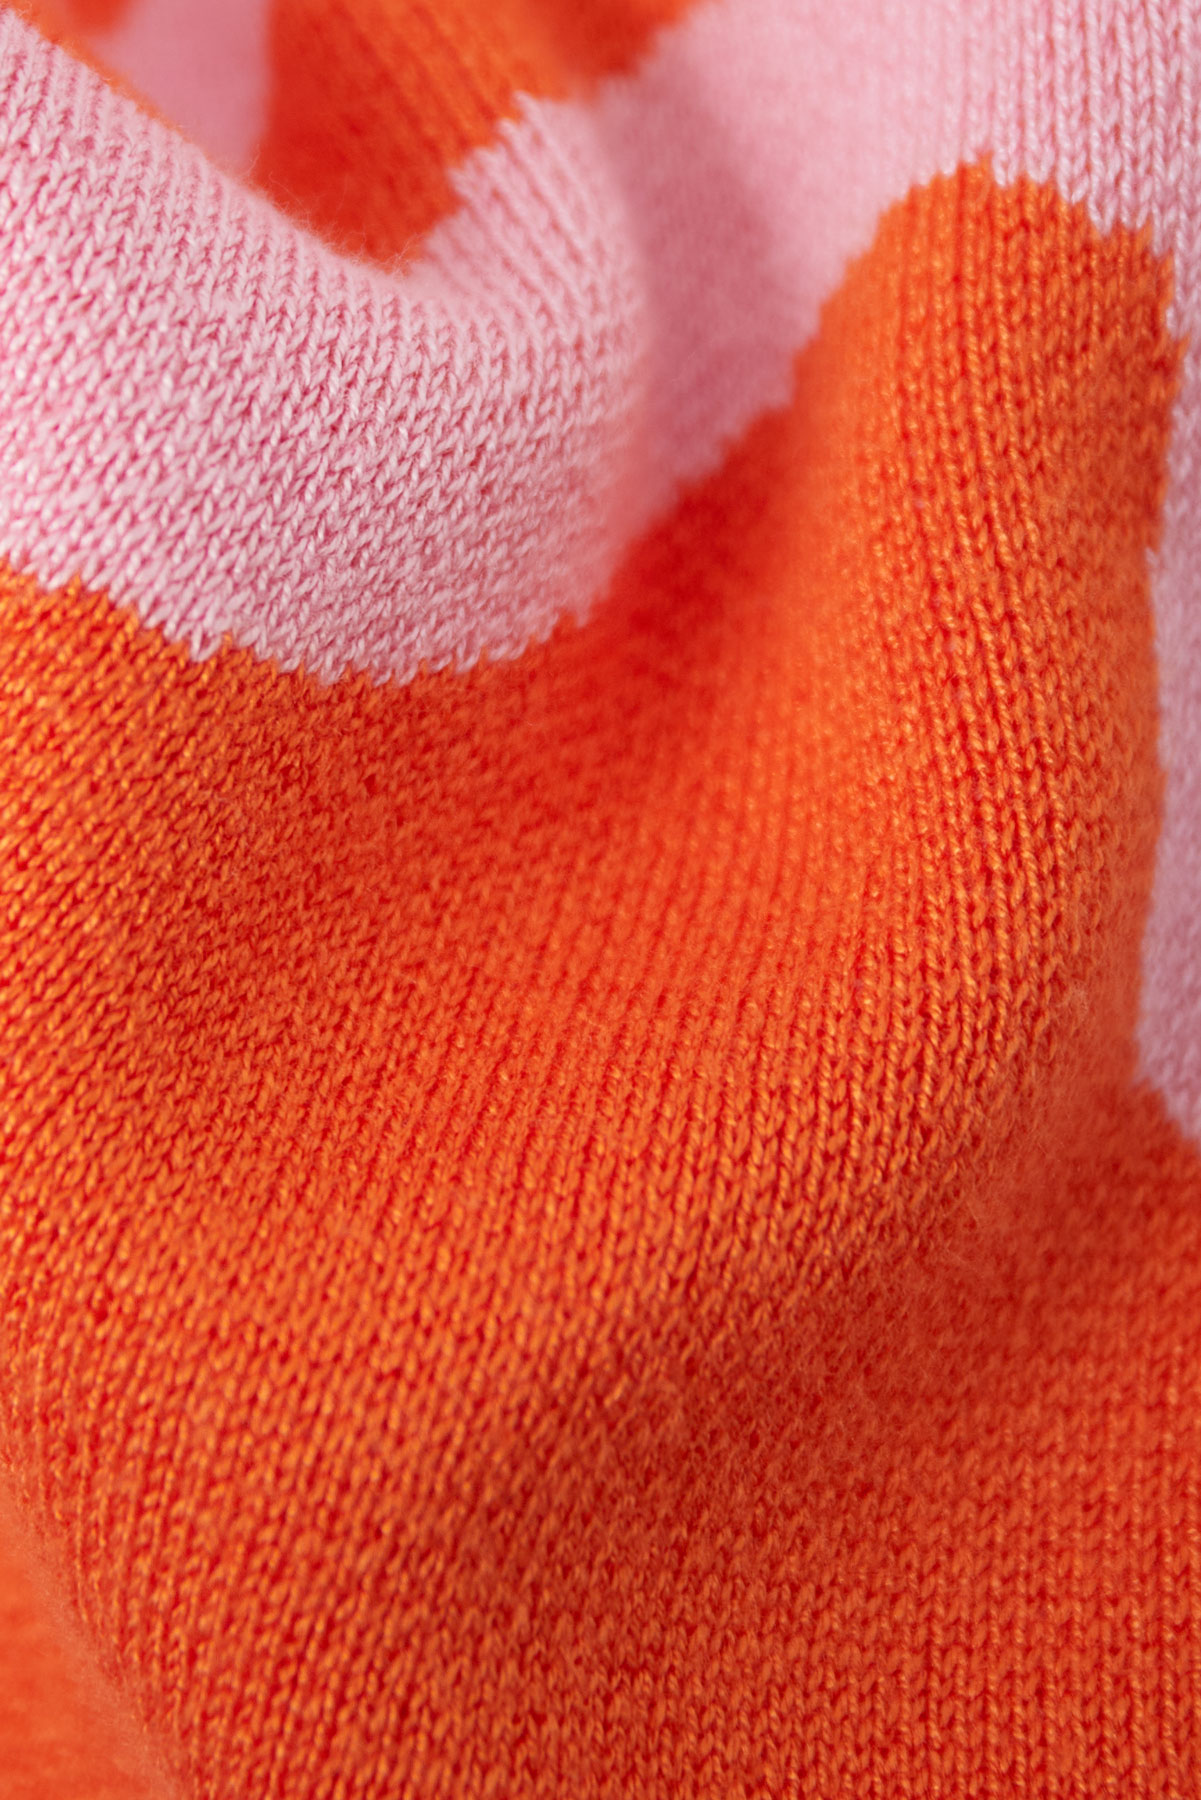 Hose mit Bio-Streifendruck - Orange und Rosa h5 Bild9